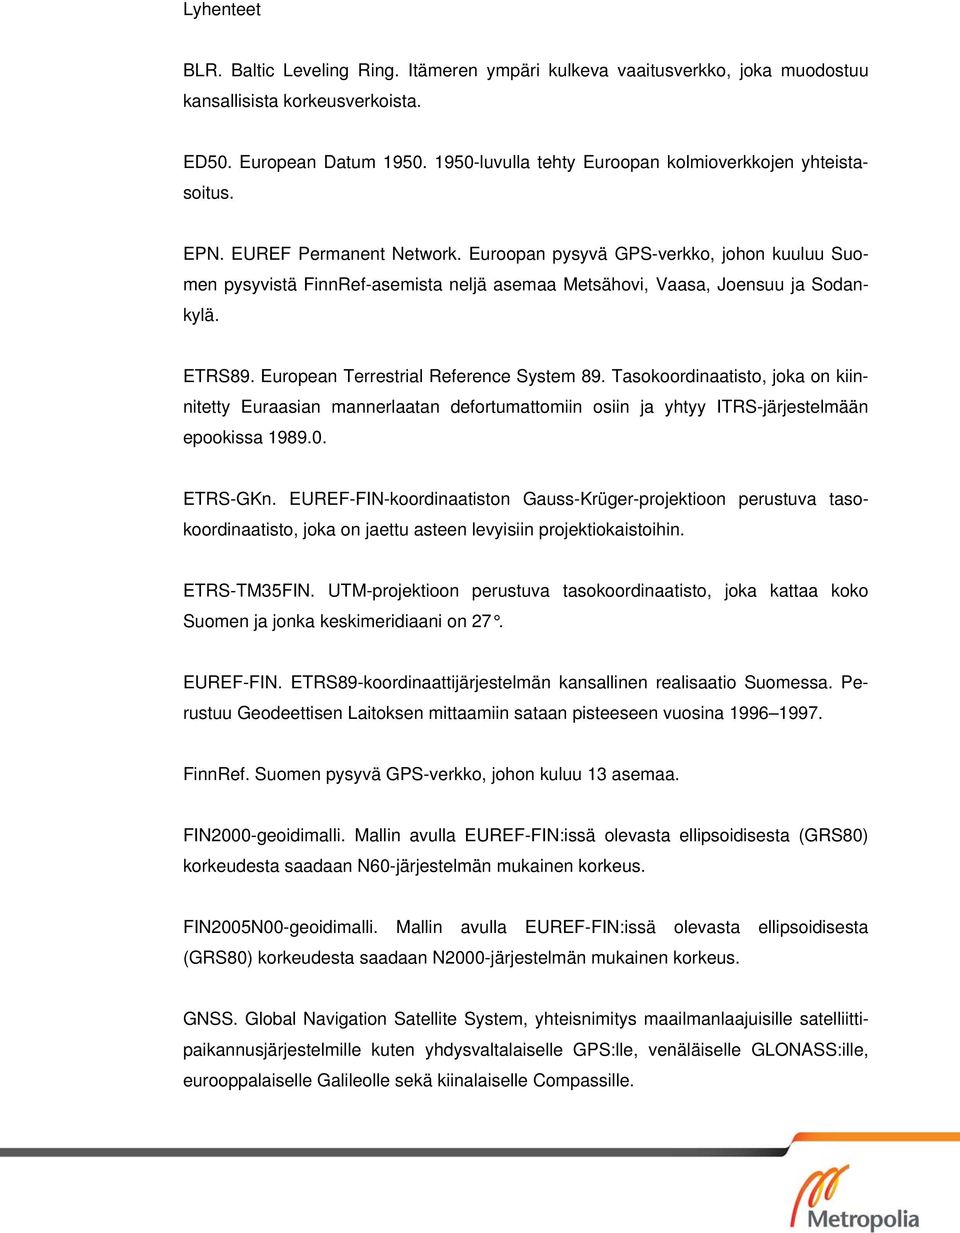 Euroopan pysyvä GPS-verkko, johon kuuluu Suomen pysyvistä FinnRef-asemista neljä asemaa Metsähovi, Vaasa, Joensuu ja Sodankylä. ETRS89. European Terrestrial Reference System 89.